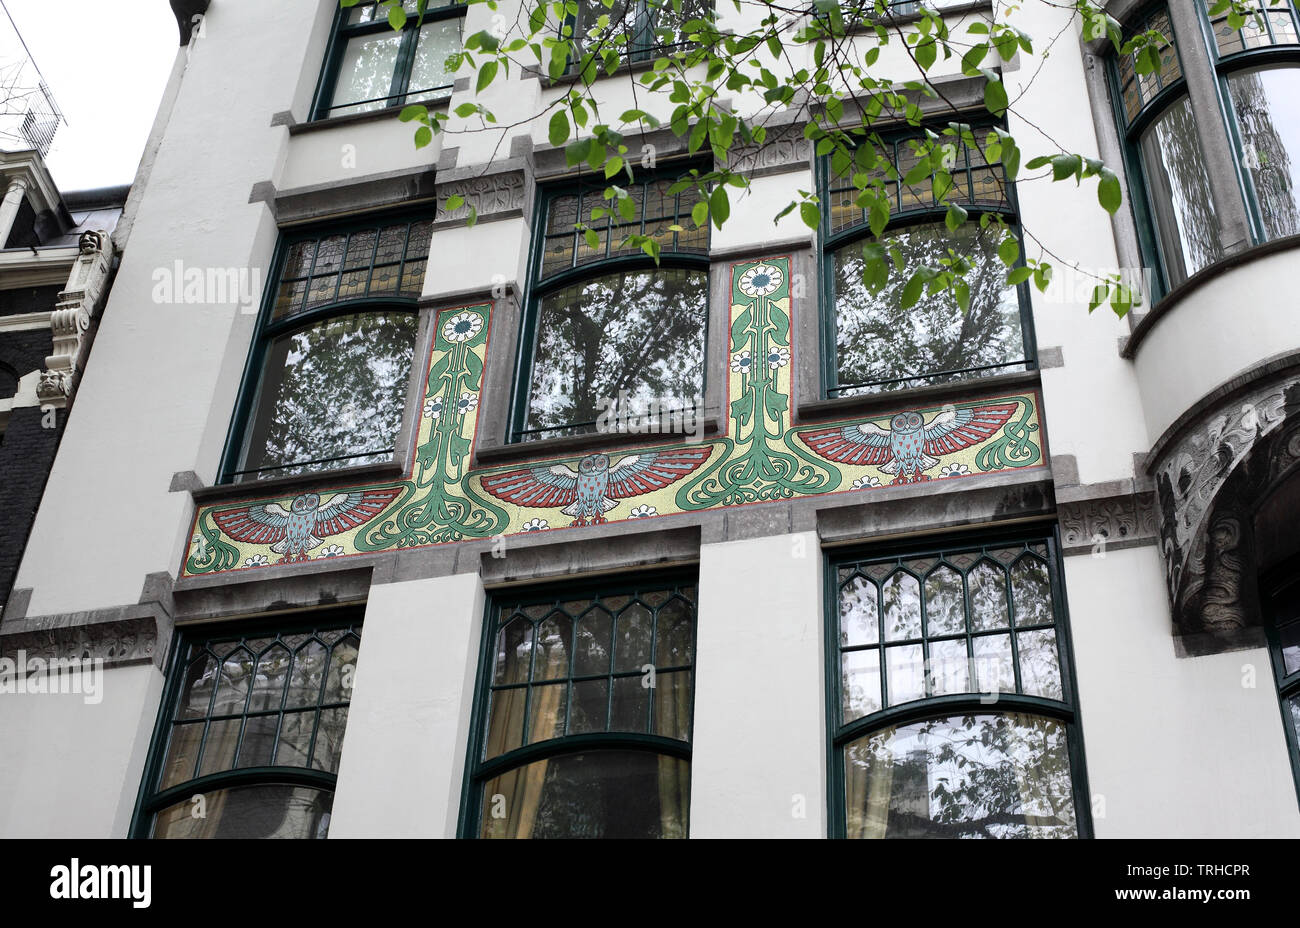 Une mosaïque Art Nouveau décore un immeuble sur Spui, Amsterdam. Banque D'Images